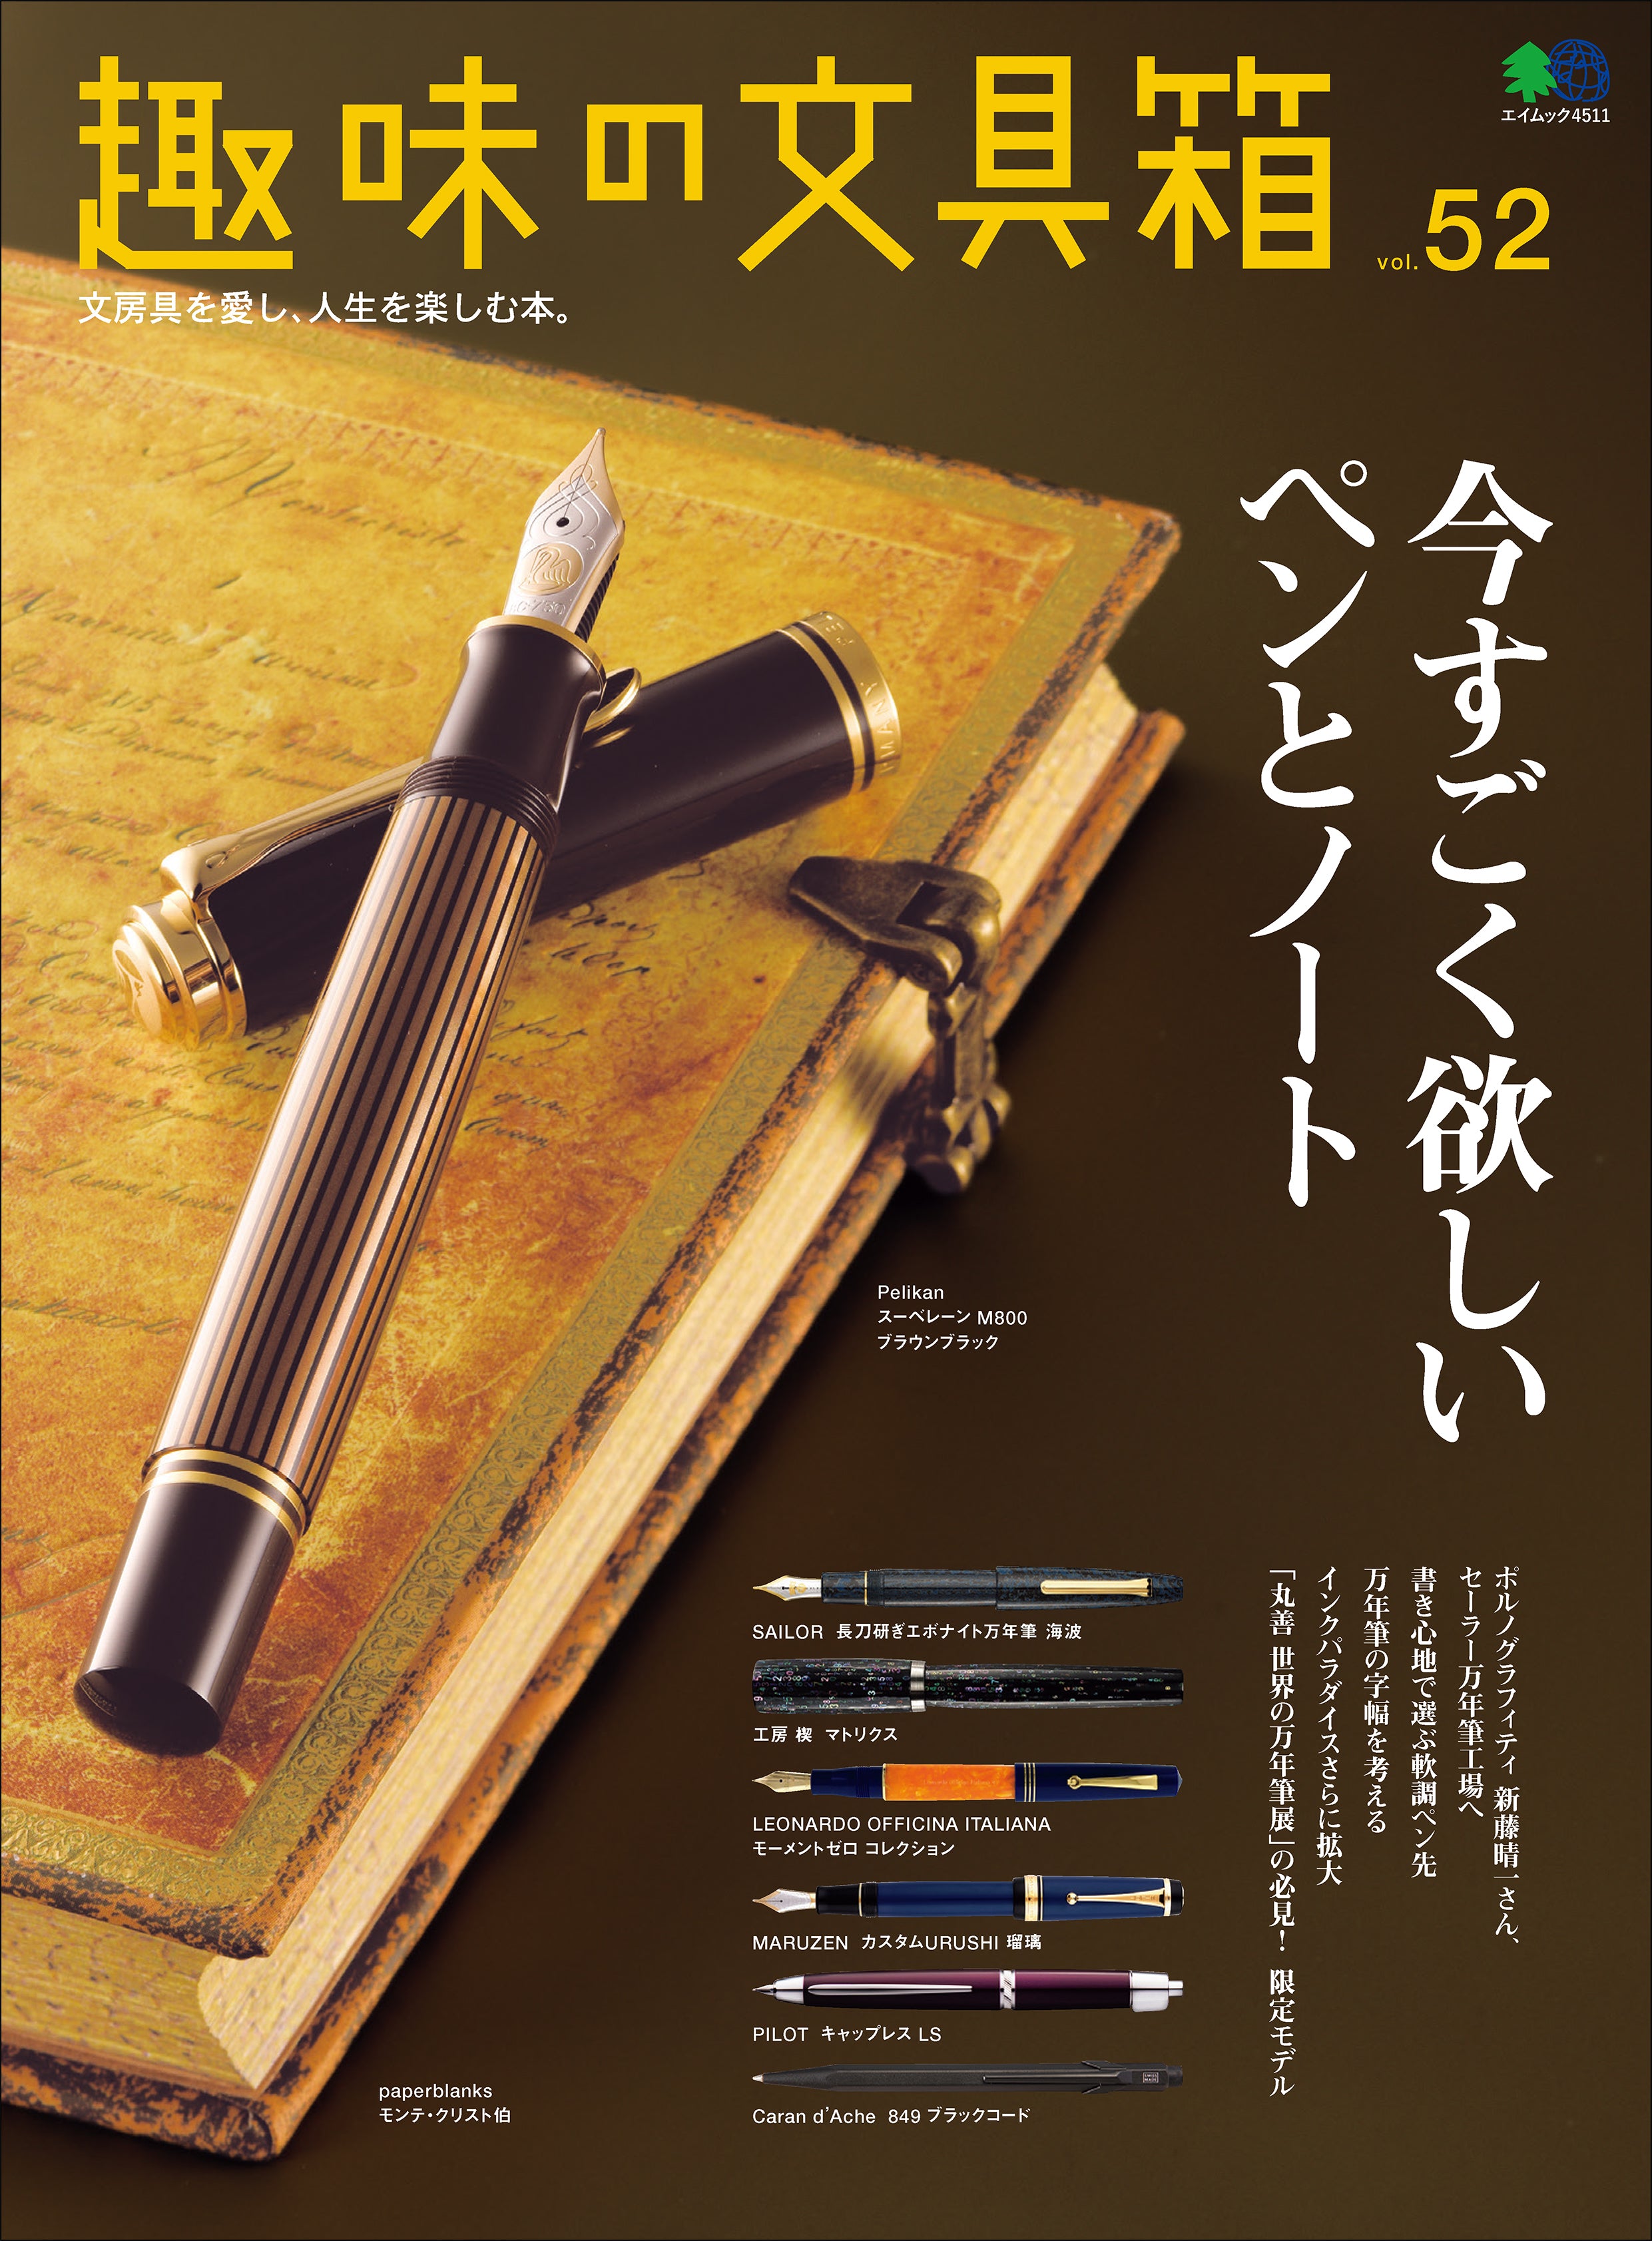 『趣味の文具箱』2020年1月号vol.52「今すごく欲しいペンとノート」